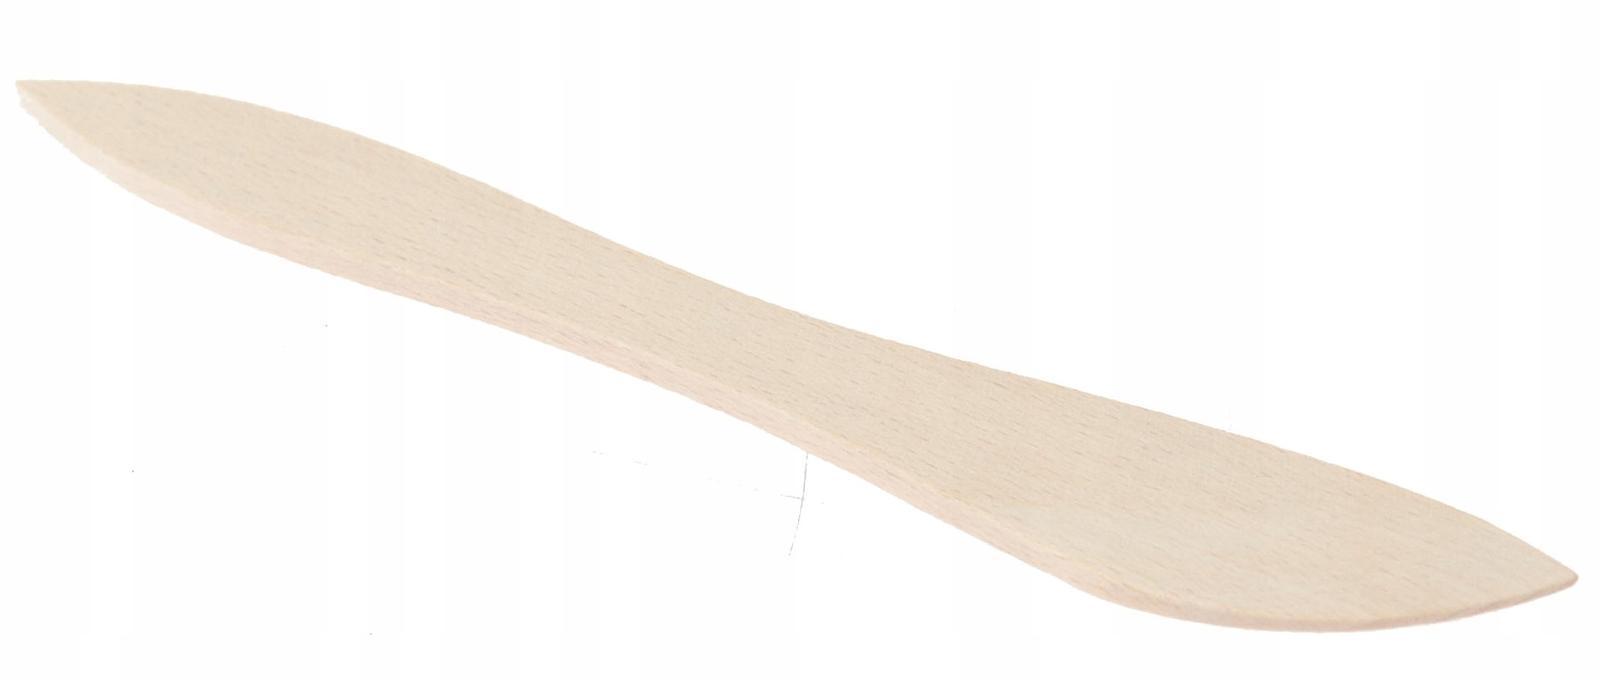 Drewniany nóż 18 cm do smarowania masła powideł nożyk buk naturalny nr. 1